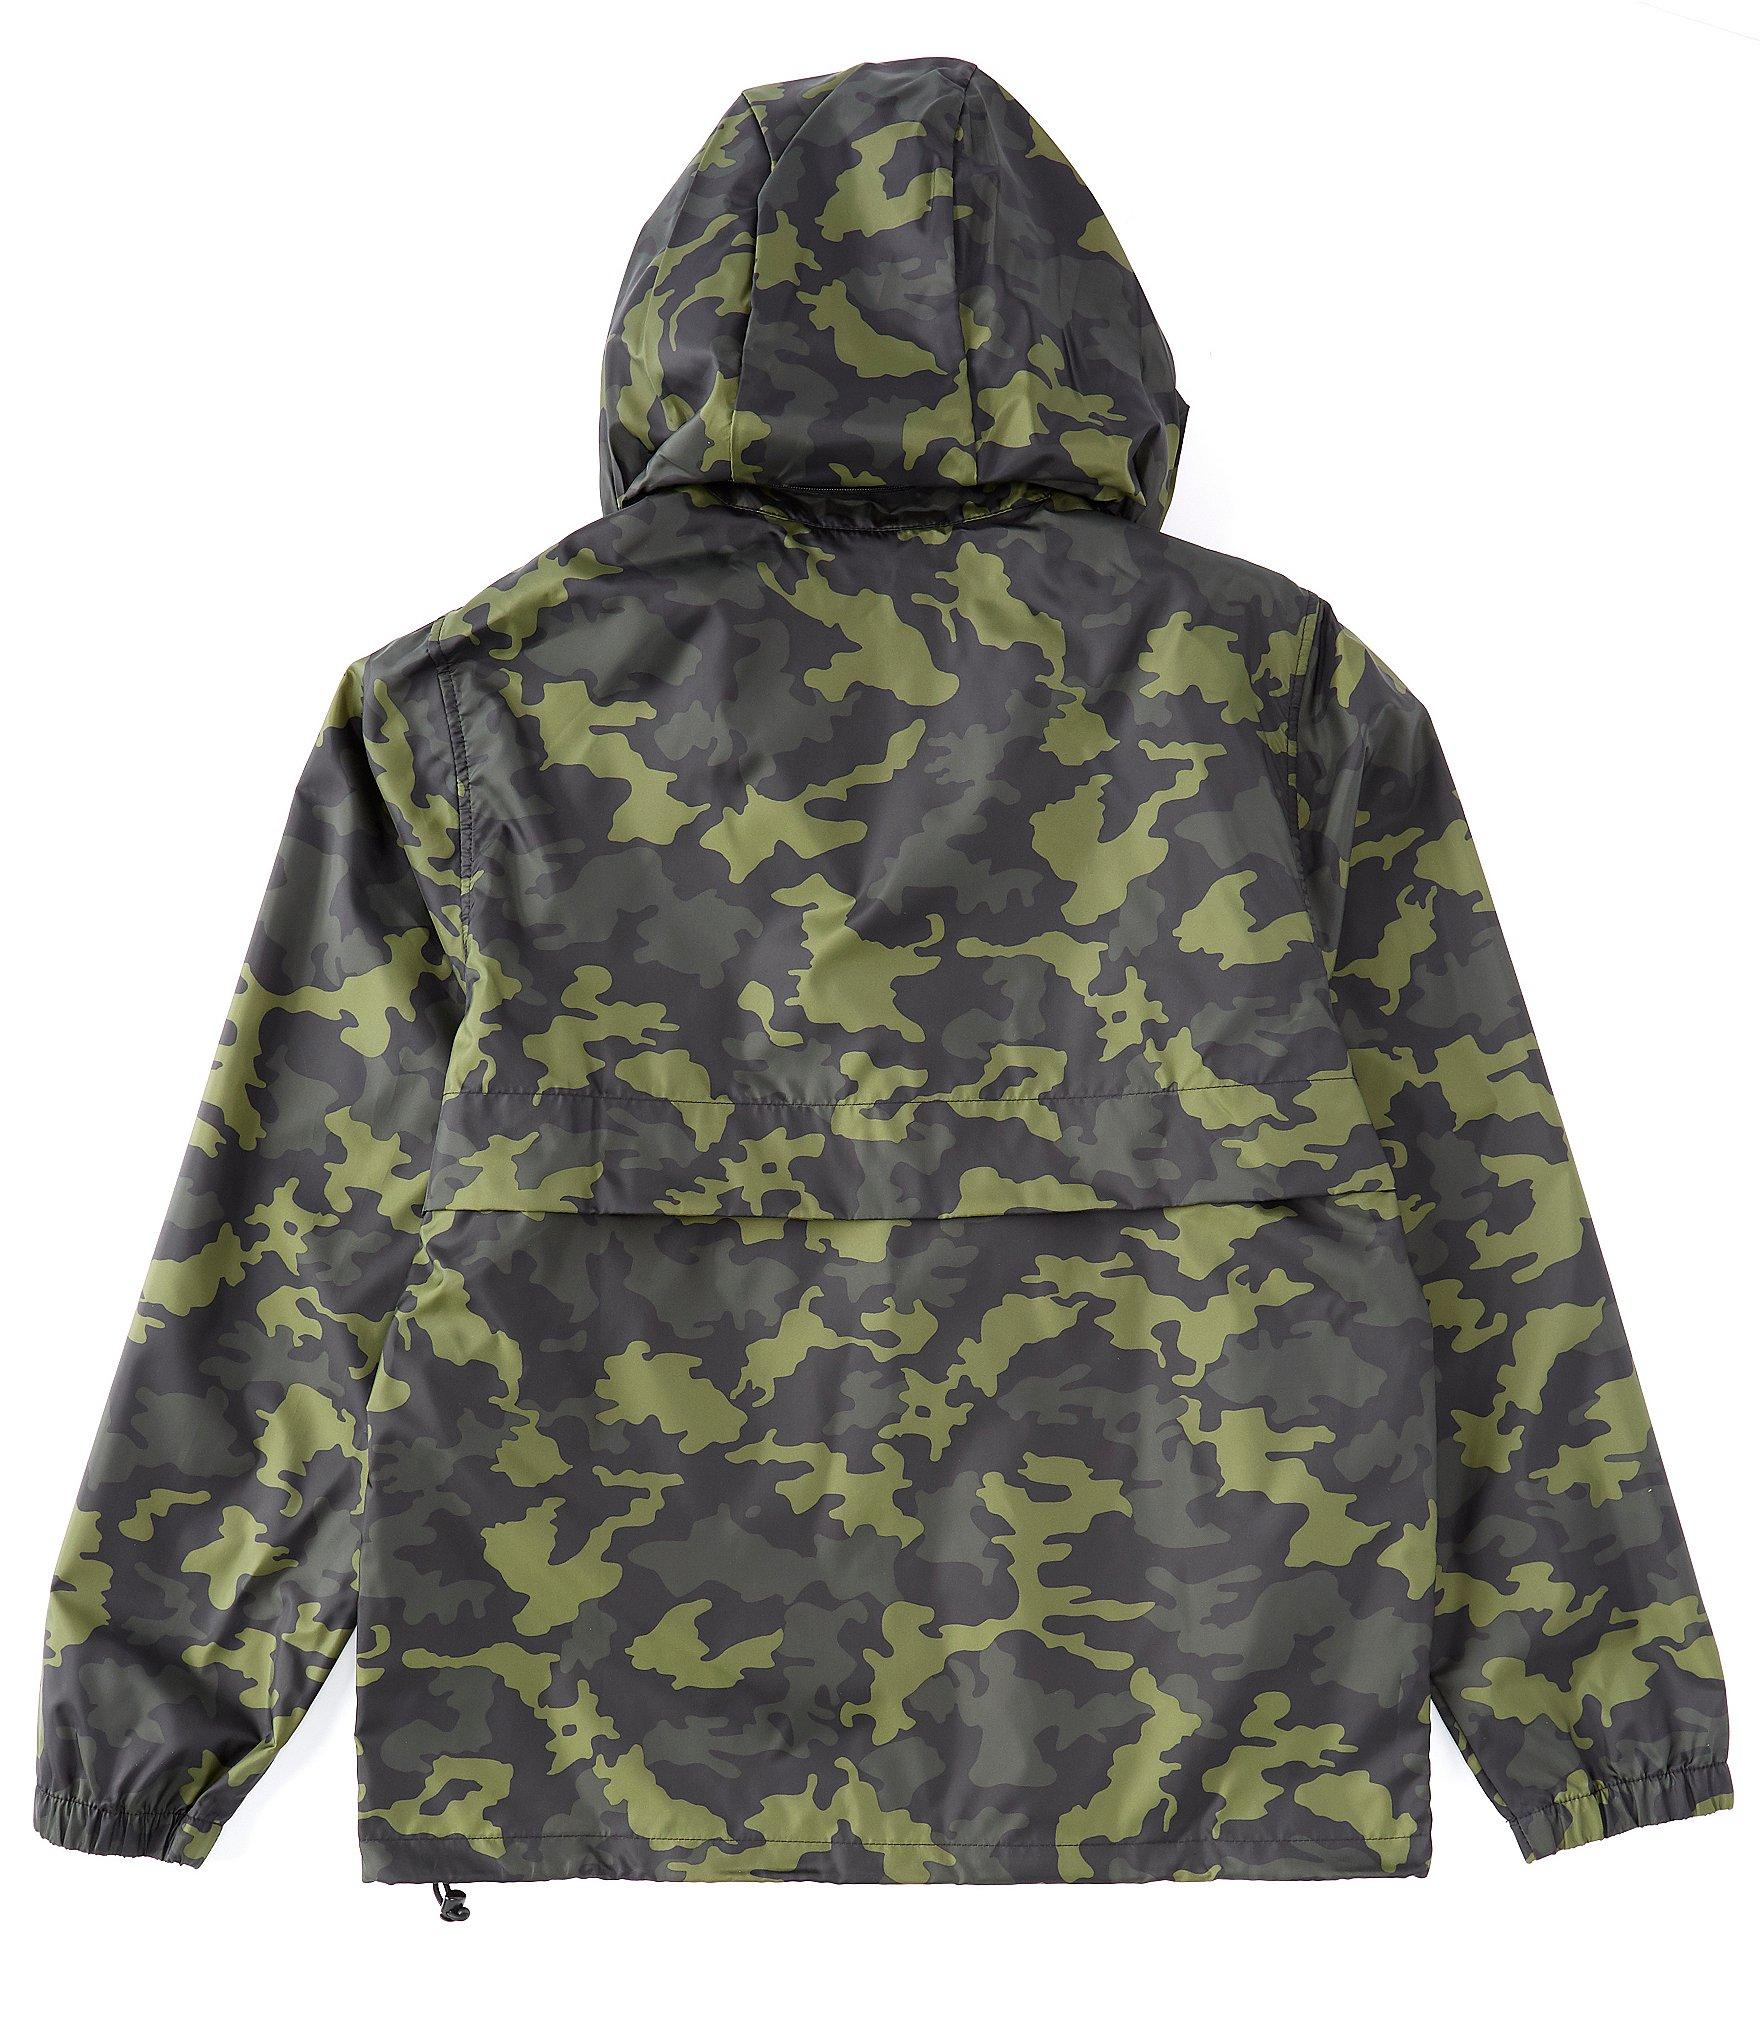 Nike Sportswear Men's Hooded Camo Jacket in Green for Men - Save 34% - Lyst